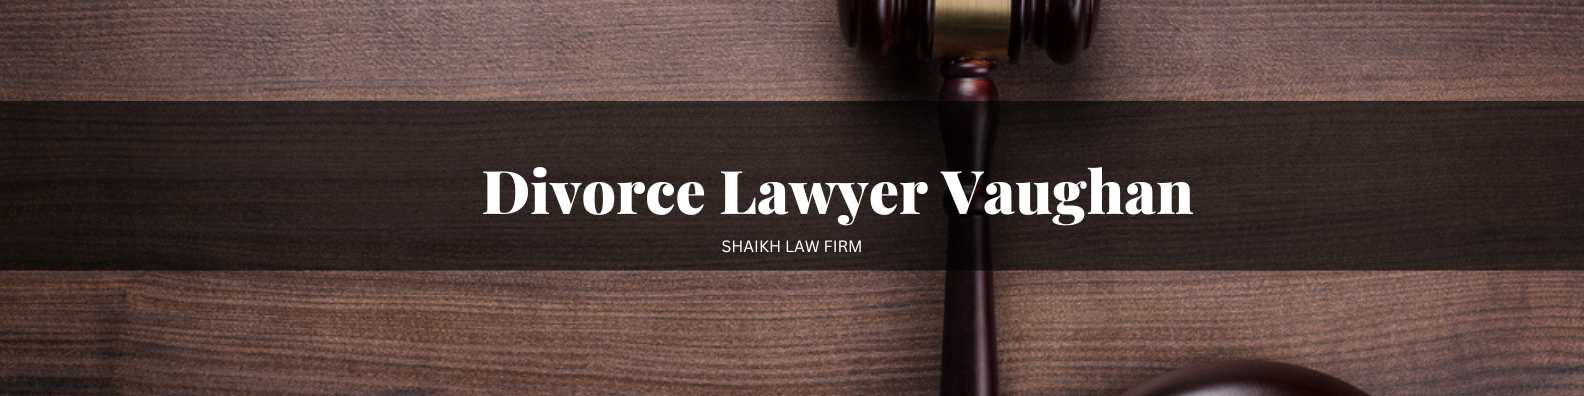 Divorce Lawyer Vaughan